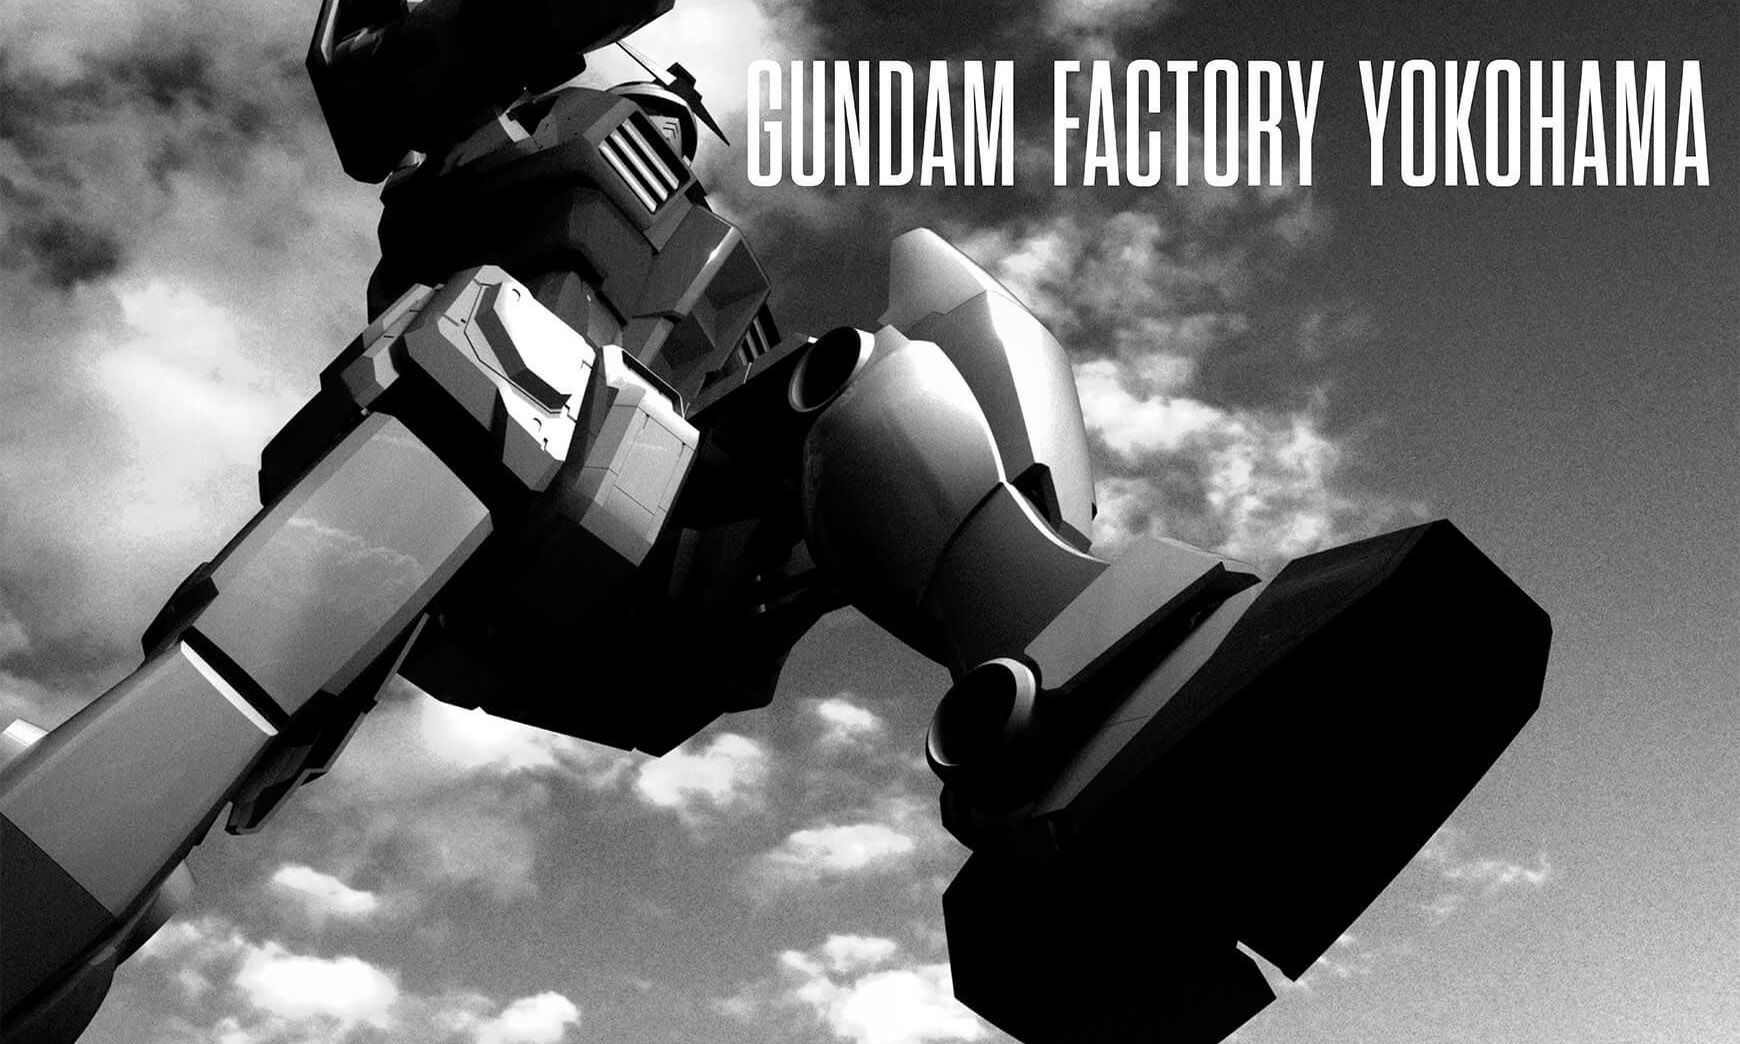 会行走的 1:1 高达，万代公布 “Gundam Factory Yokohama” 企划